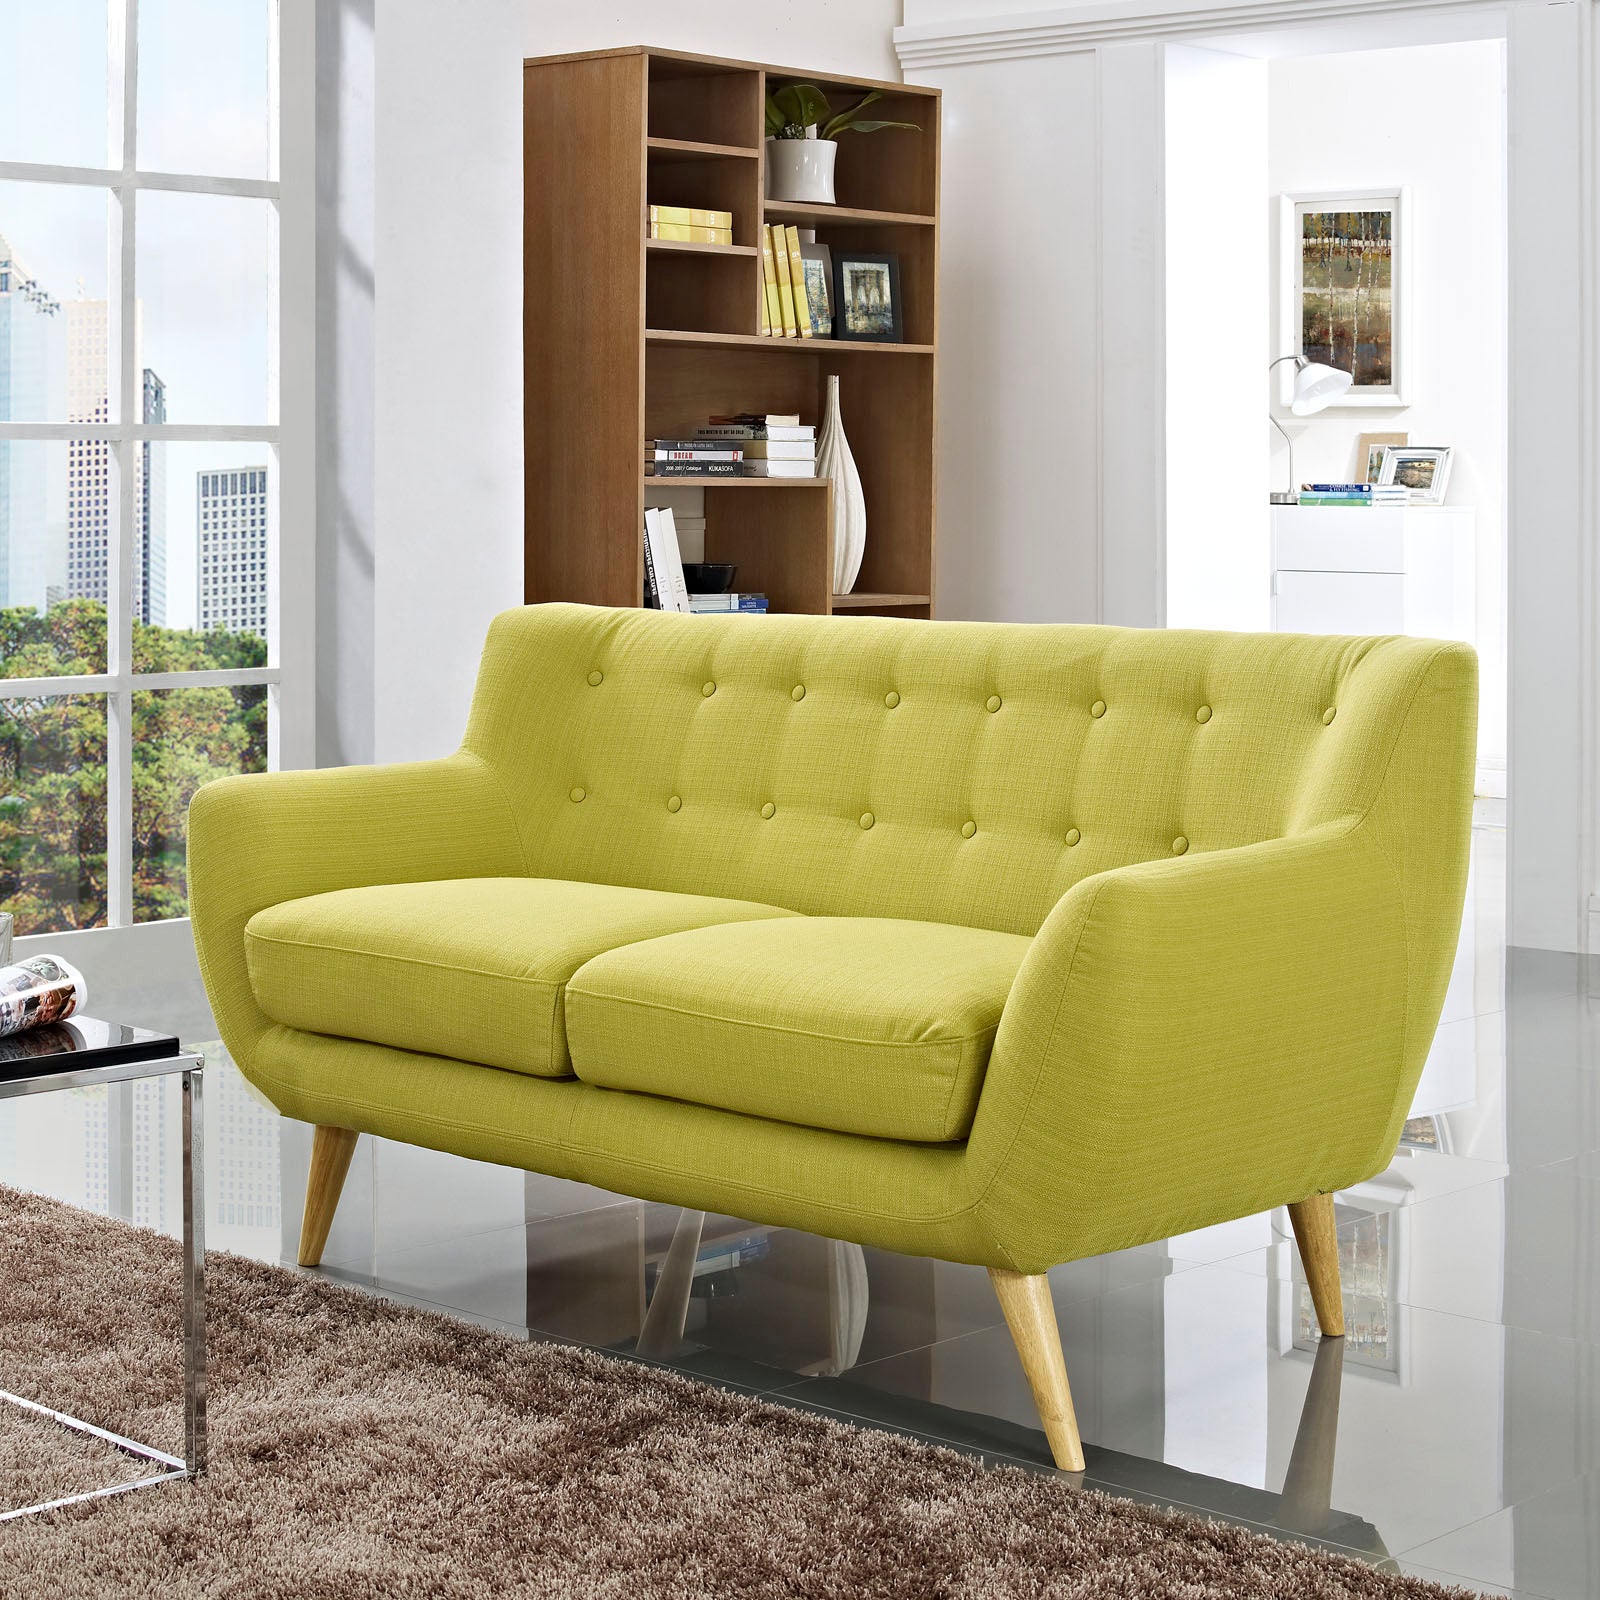 Remark Upholstered Fabric Loveseat - East Shore Modern Home Furnishings